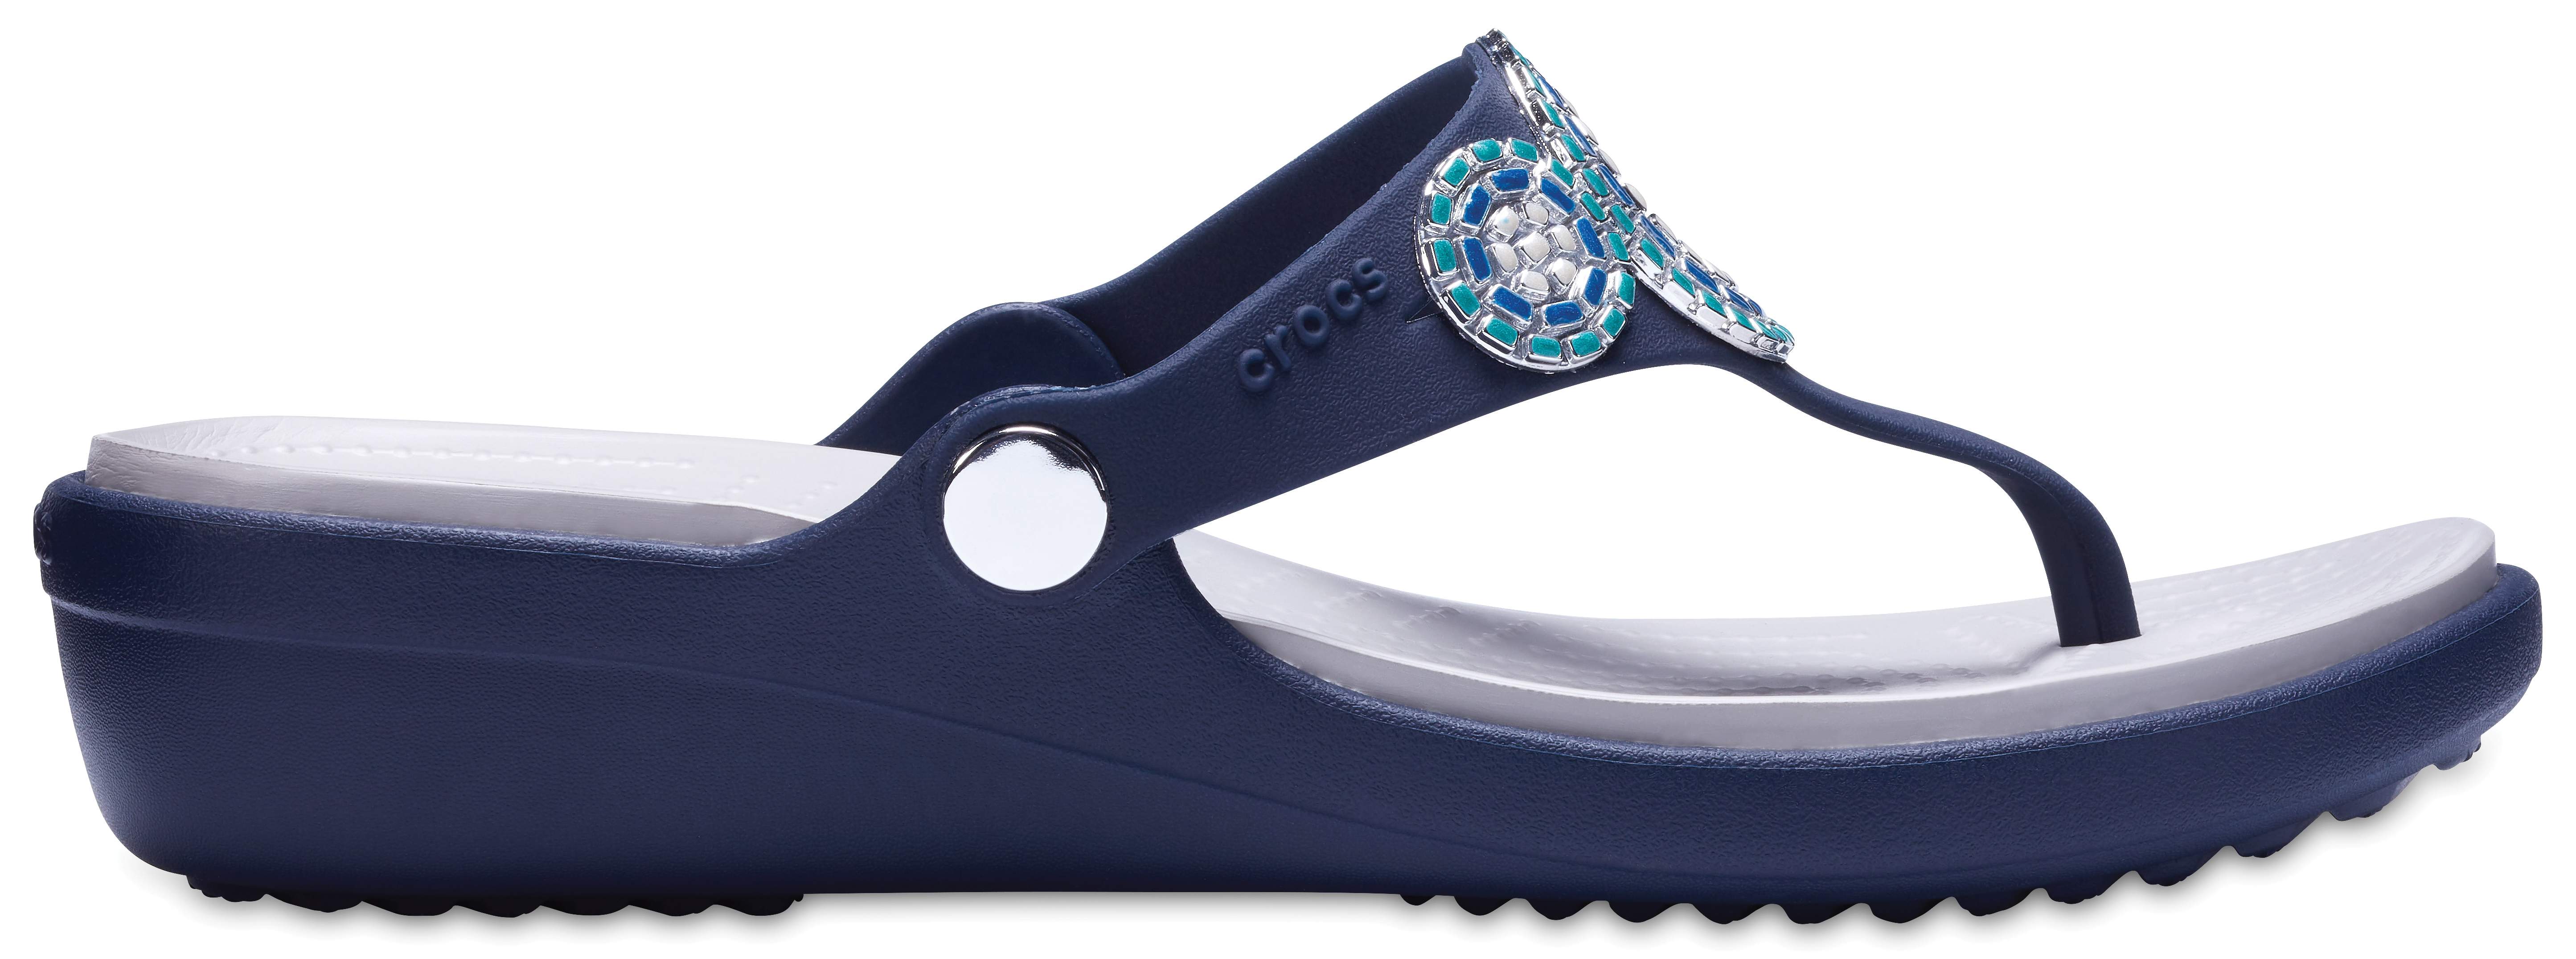 crocs women's sanrah diamante wedge flip